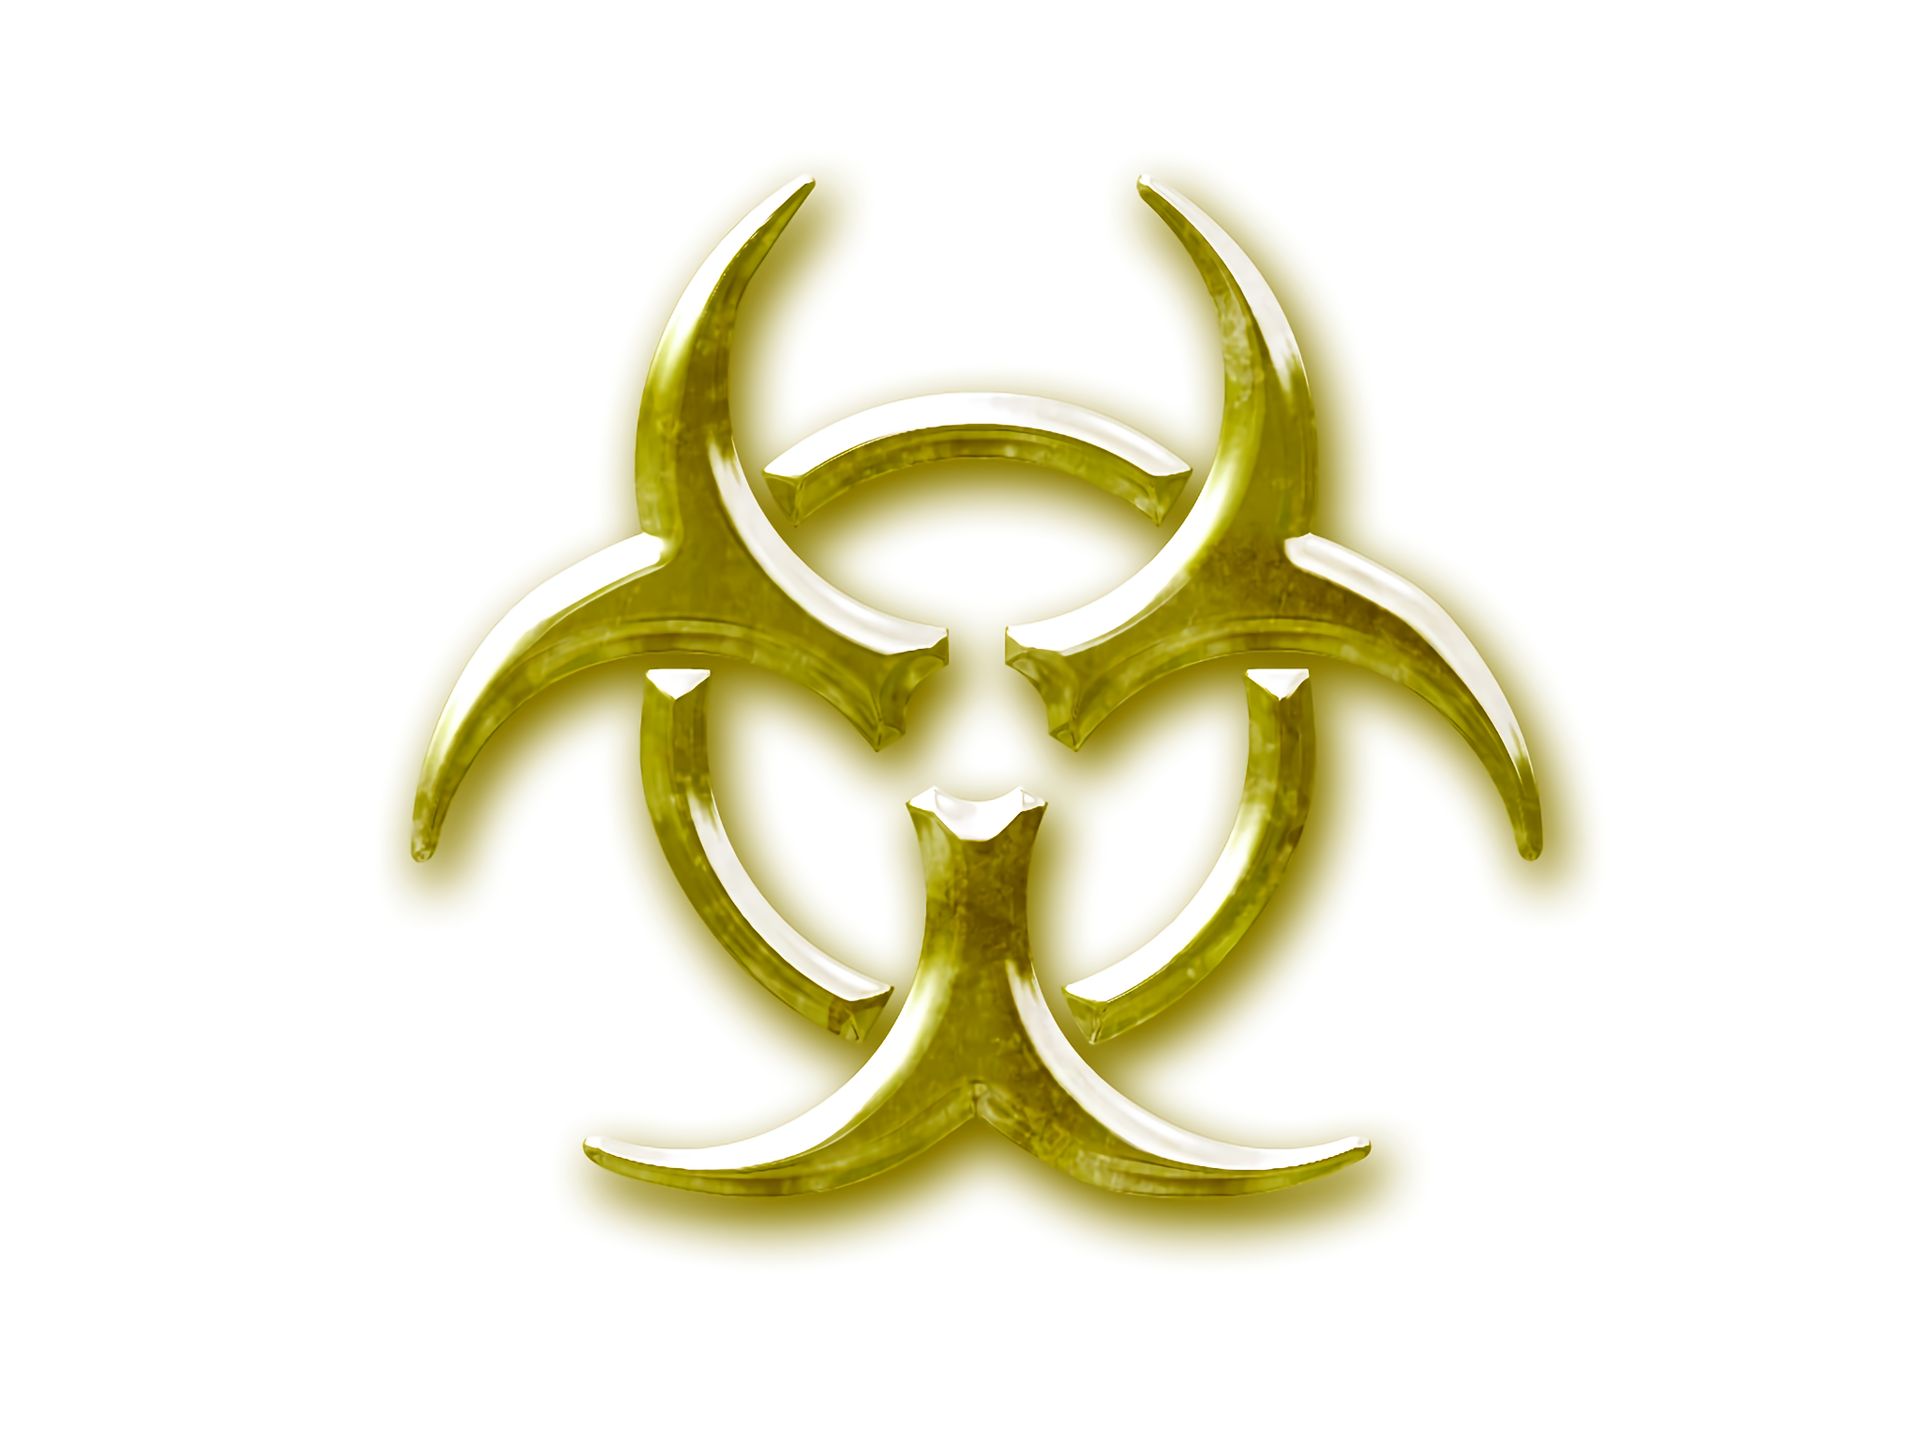 sci fi, biohazard, toxic